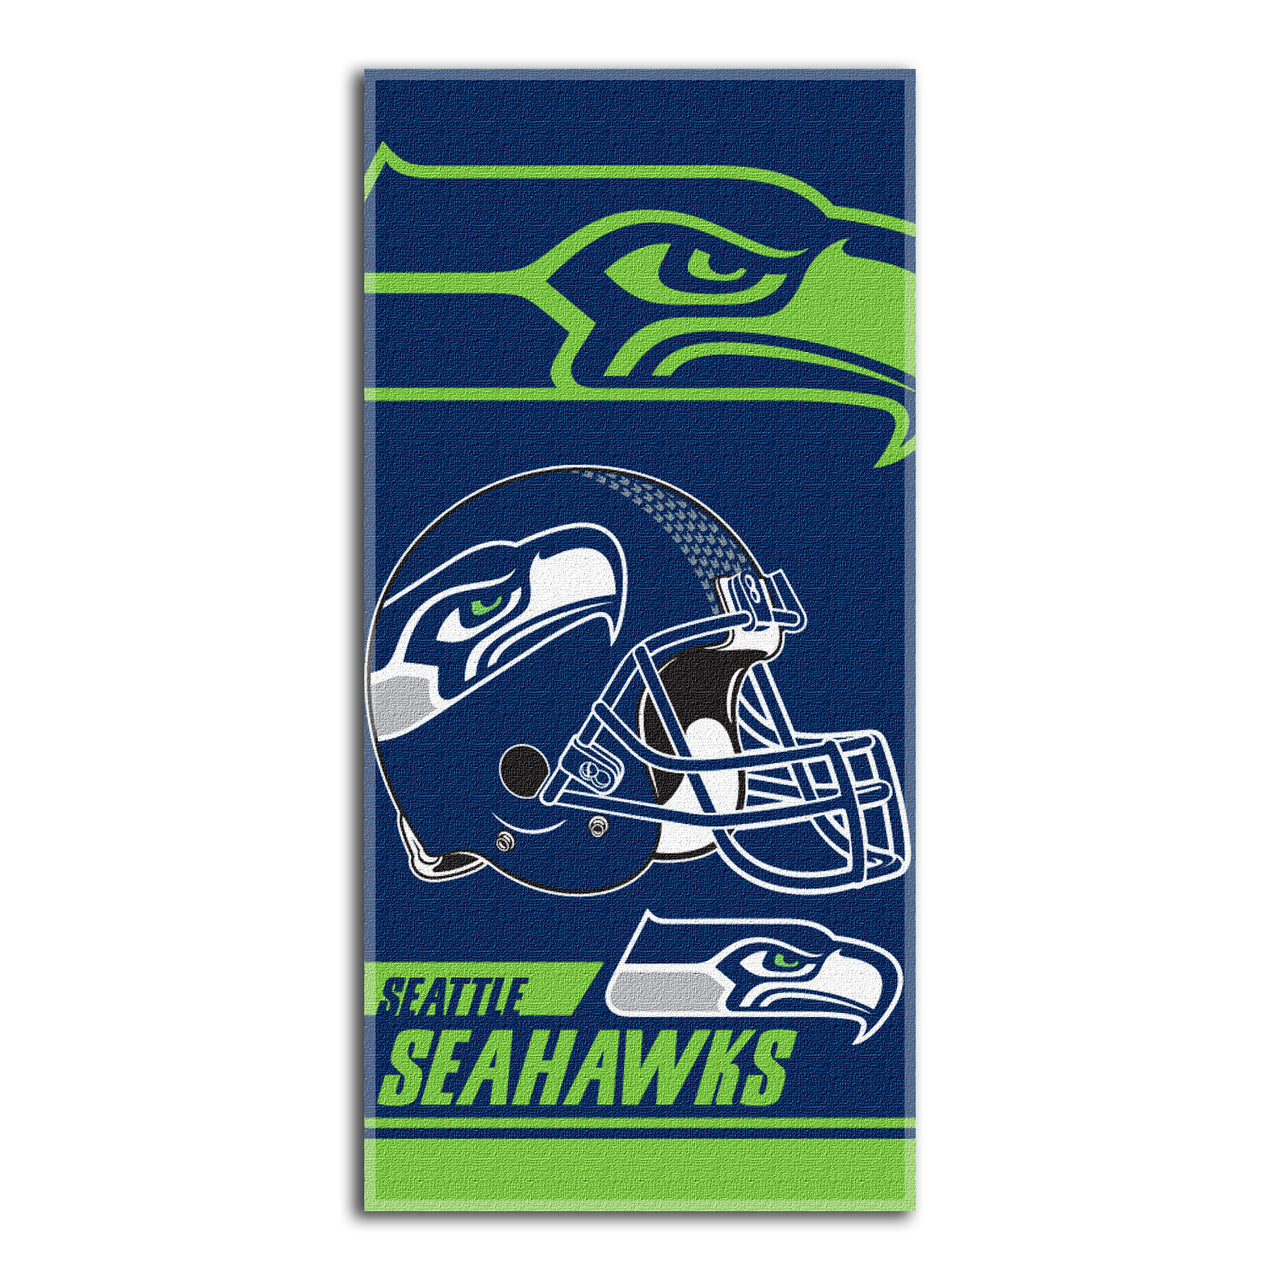 Seattle Seahawks Beach Towel (28x58) - NFL